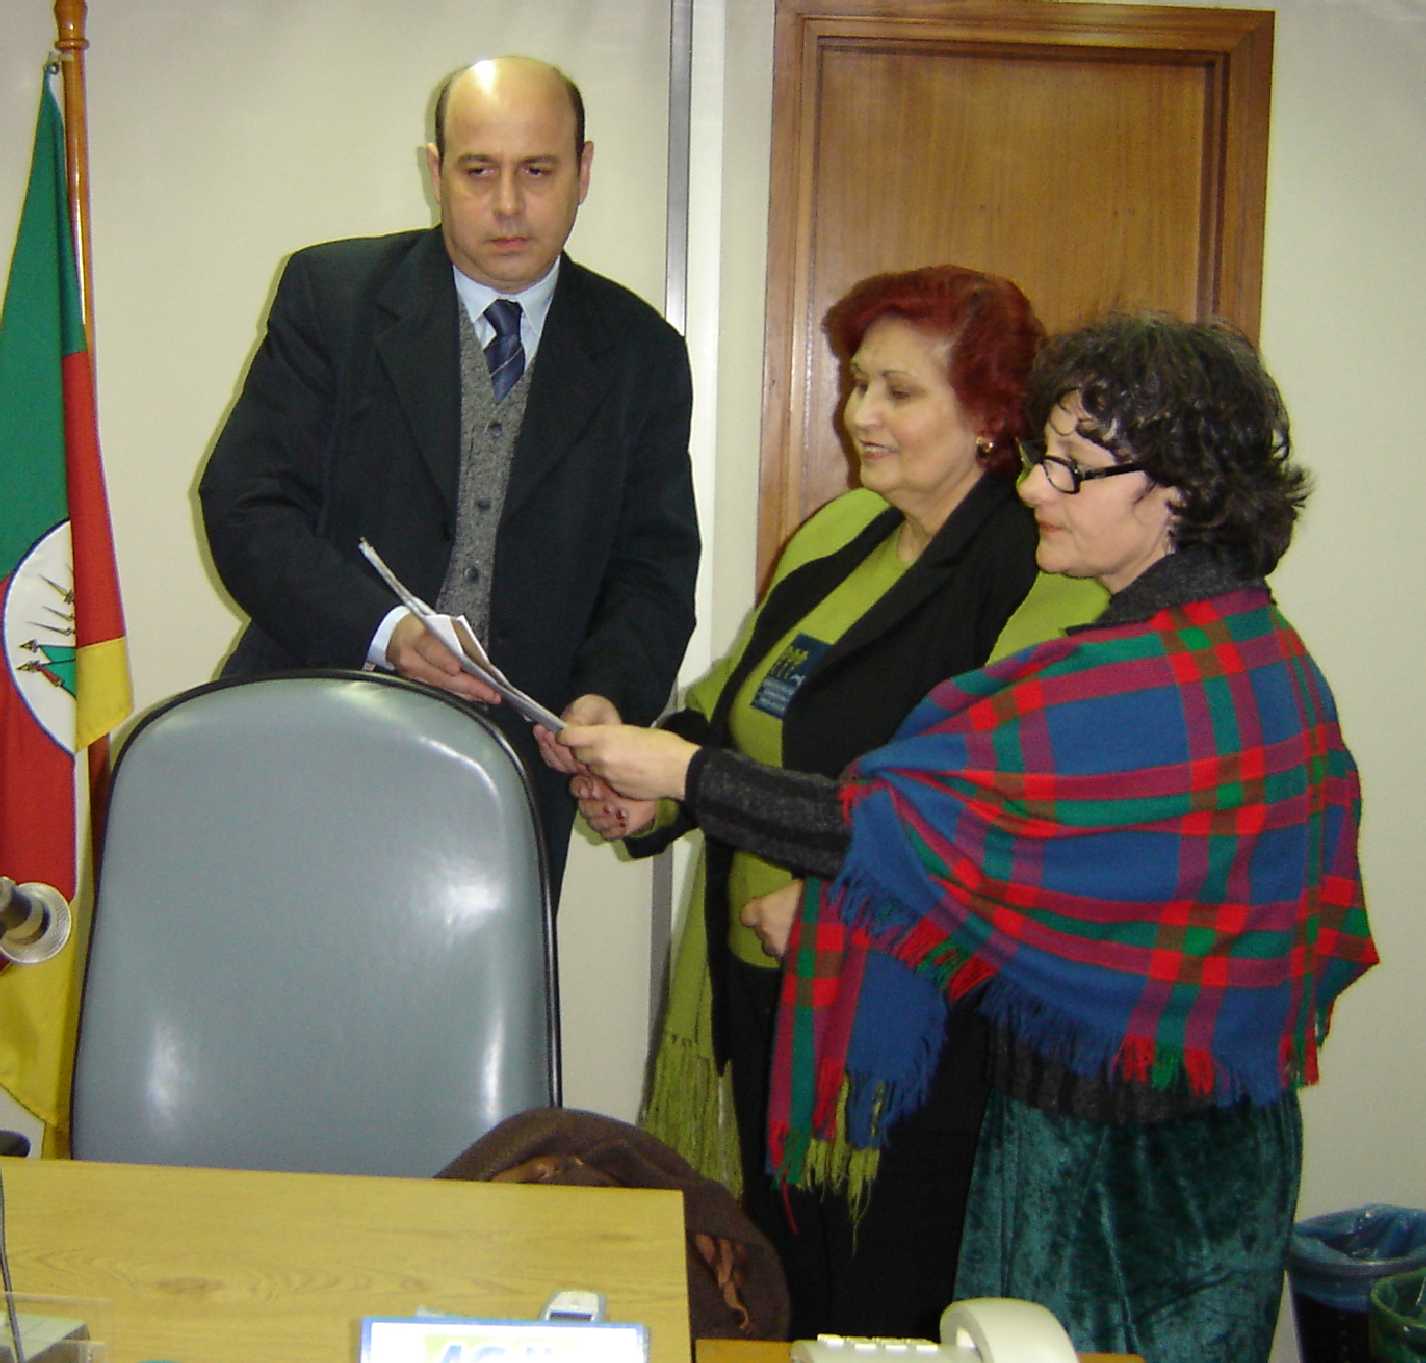  Miguel Velasquez recebe representação de Mariza Alberton e Télia Negrão